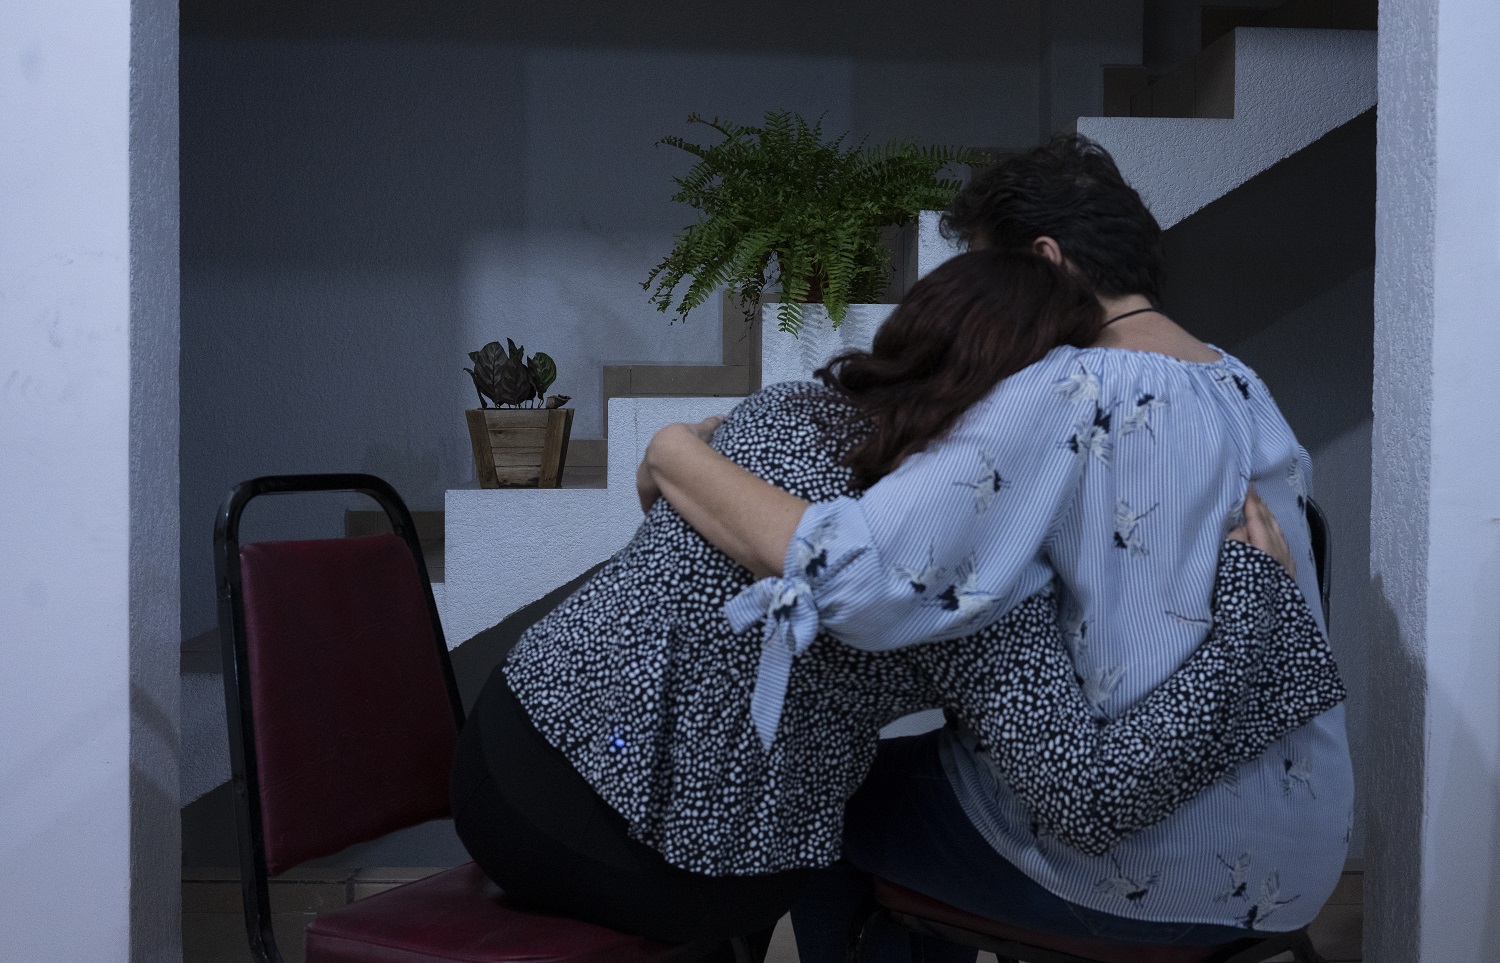 Sara abraza a su madre, una de las jovenes detenidas por policías municipales de León, Guanajuato, el 22 de agosto del 2020. Sara quien asistió a la protesta para exigir justicia por una joven que denunció ser víctima de acoso sexual y tocamientos por parte de agentes policiales | Foto: Mónica González